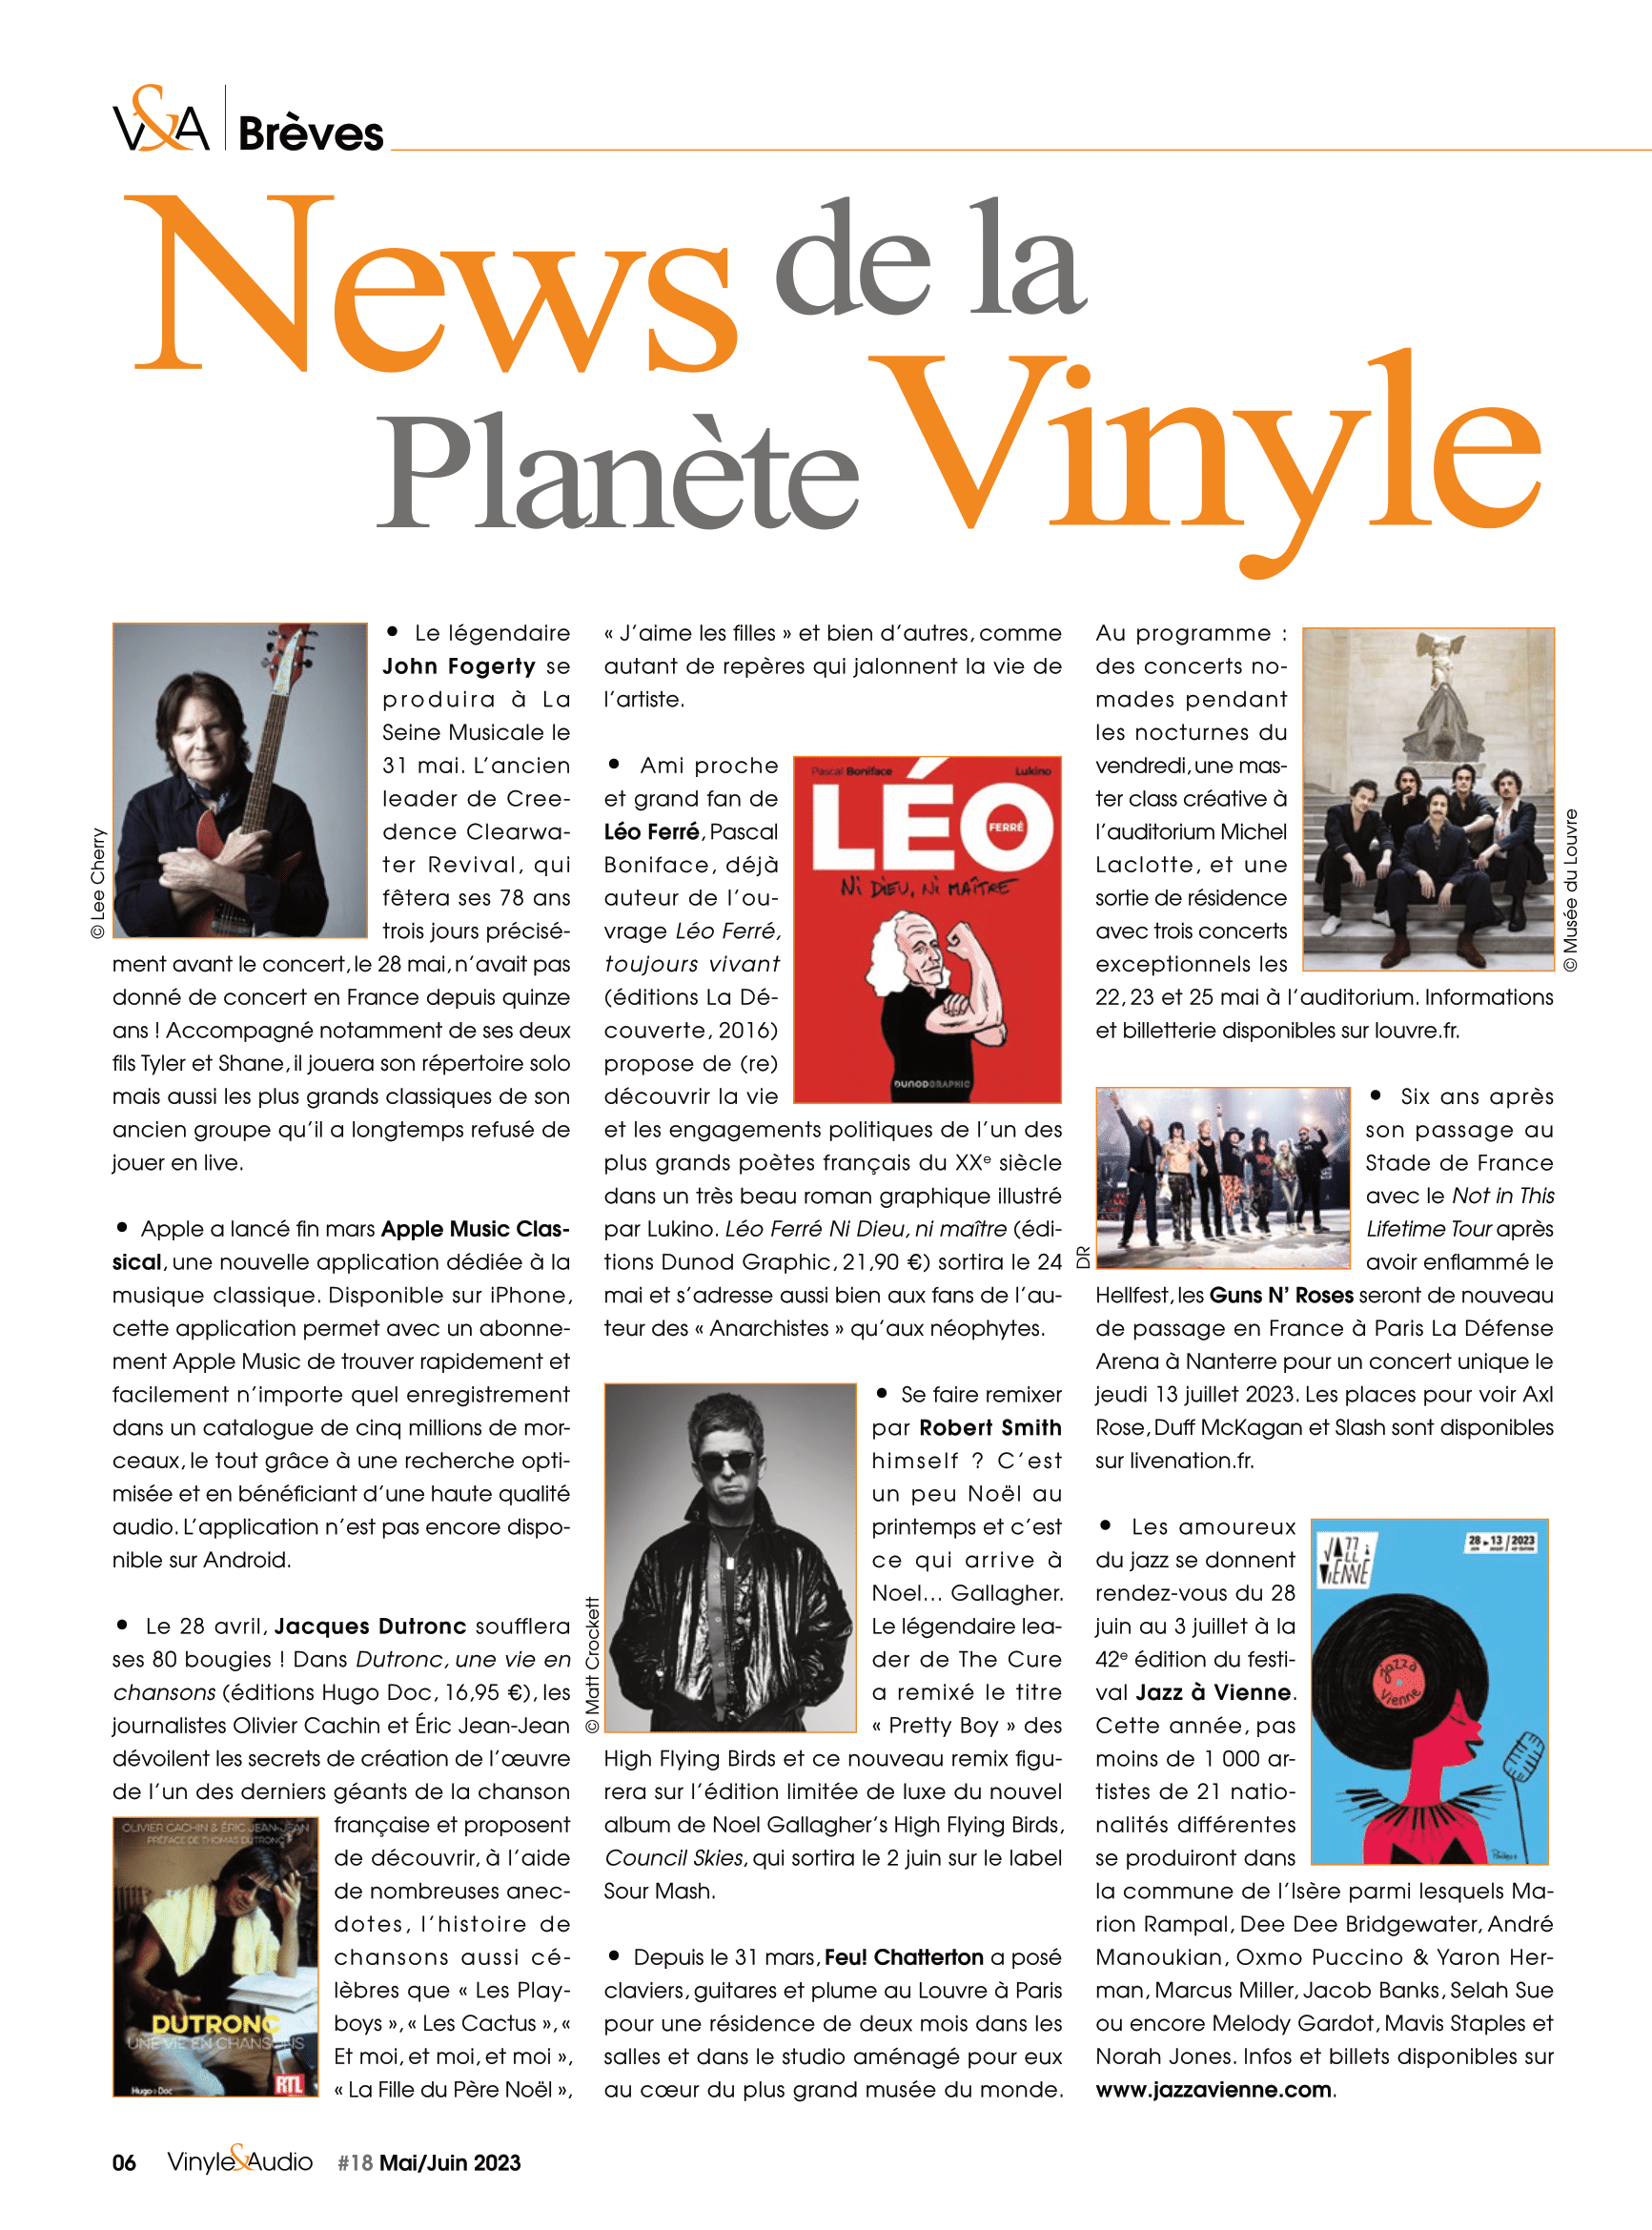 Vinyle & Audio n°18 : News de la Planète Vinyle